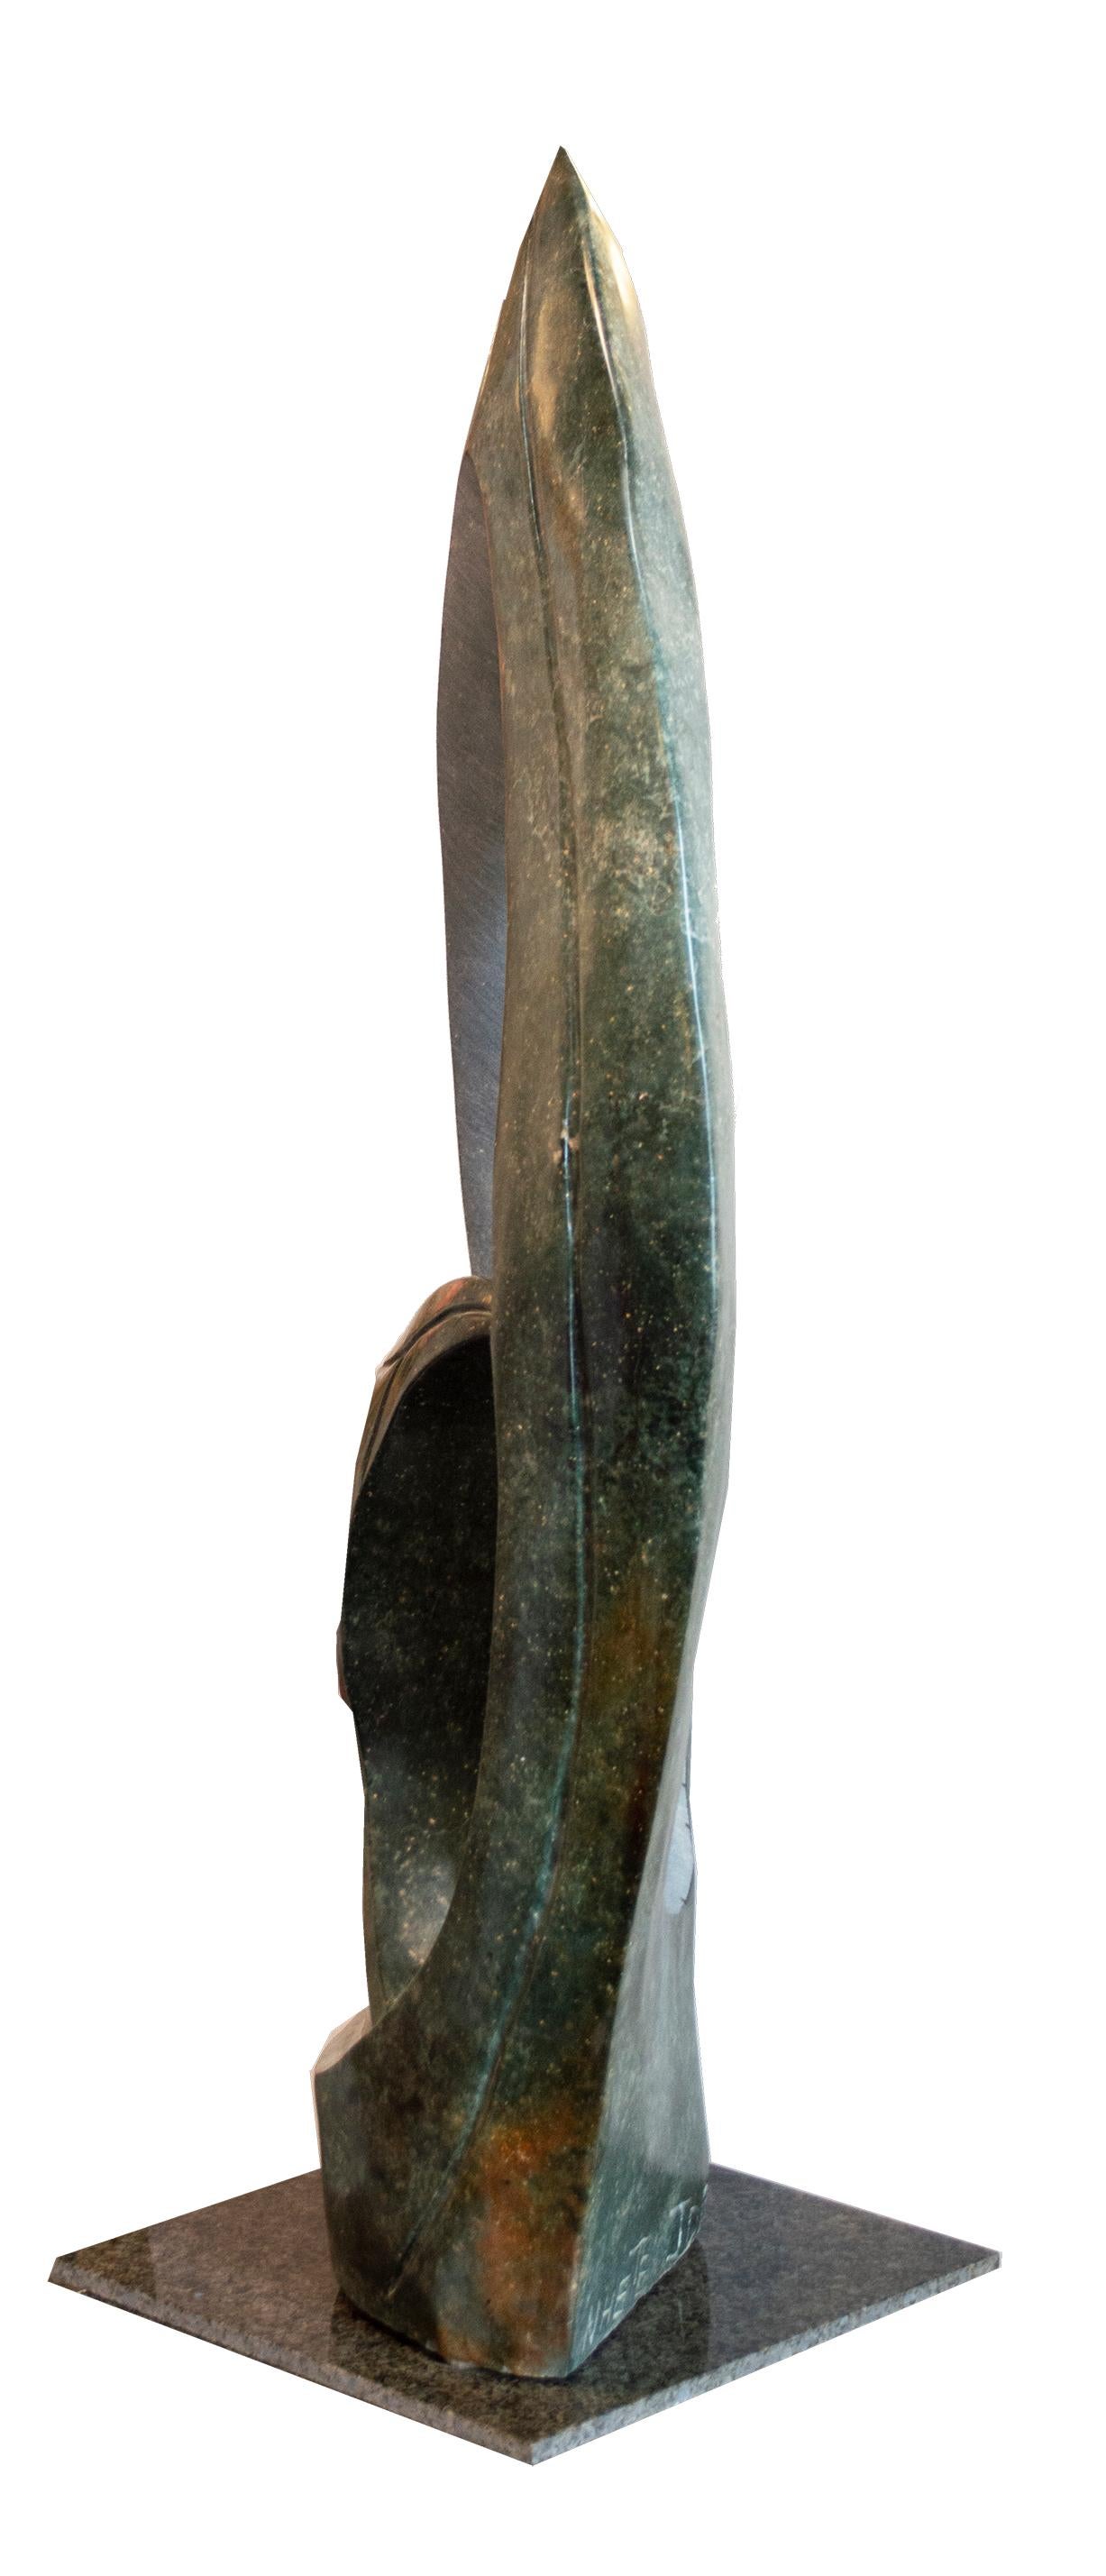 'Stork Bird' original opal serpentine Shona sculpture signed by Jonathan Nhete - Sculpture by Jonathan Nhete 